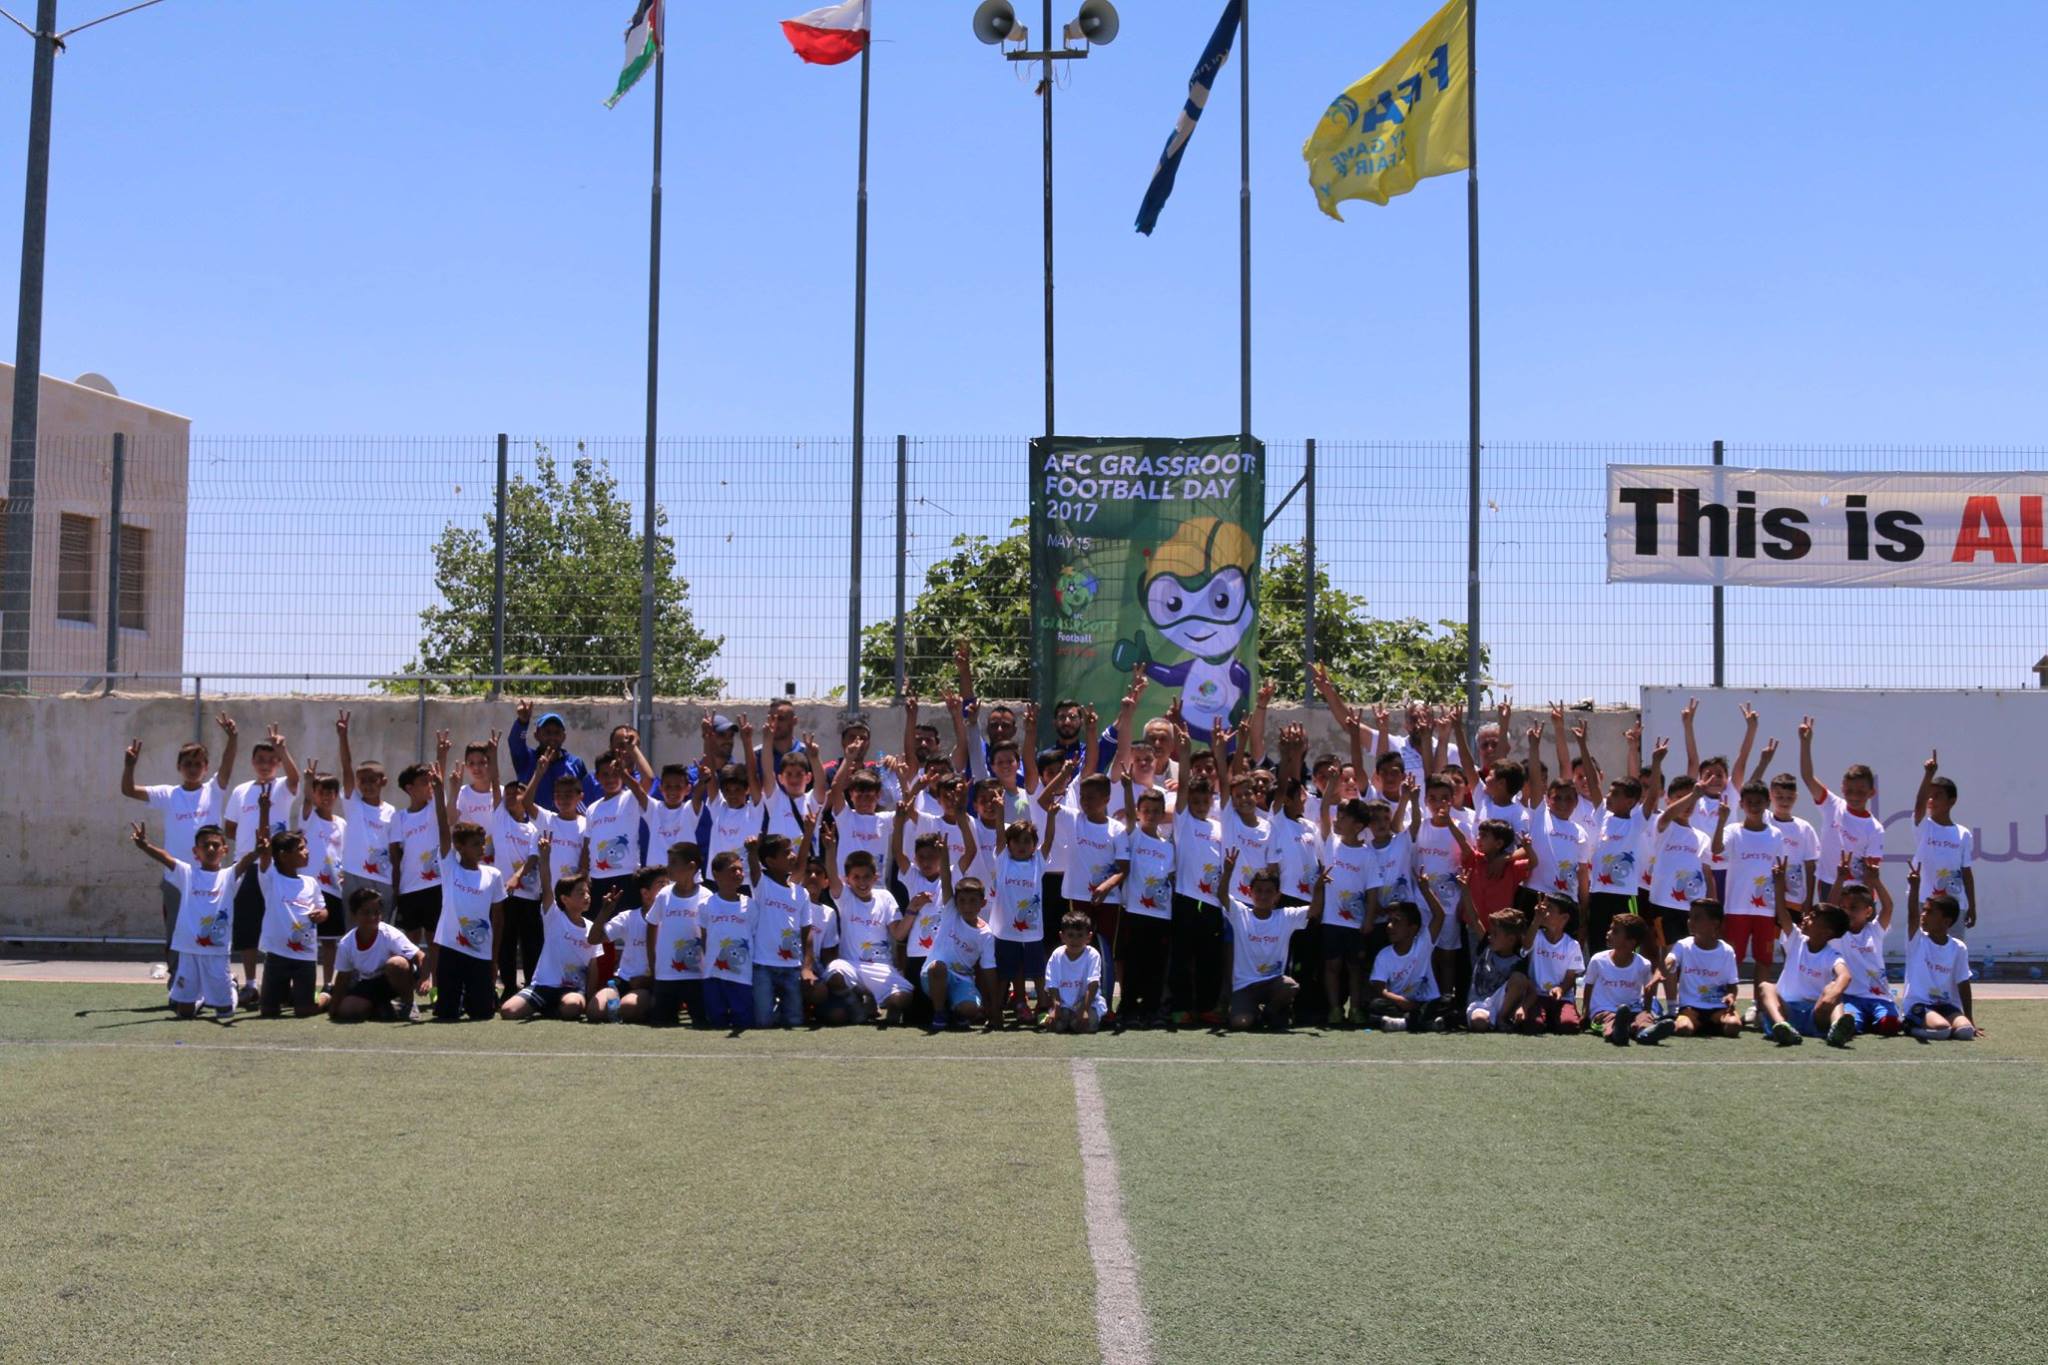 اتحاد كرة القدم ينظم مهرجان يوم الواعدين بالتعاون مع الاتحاد الآسيوي